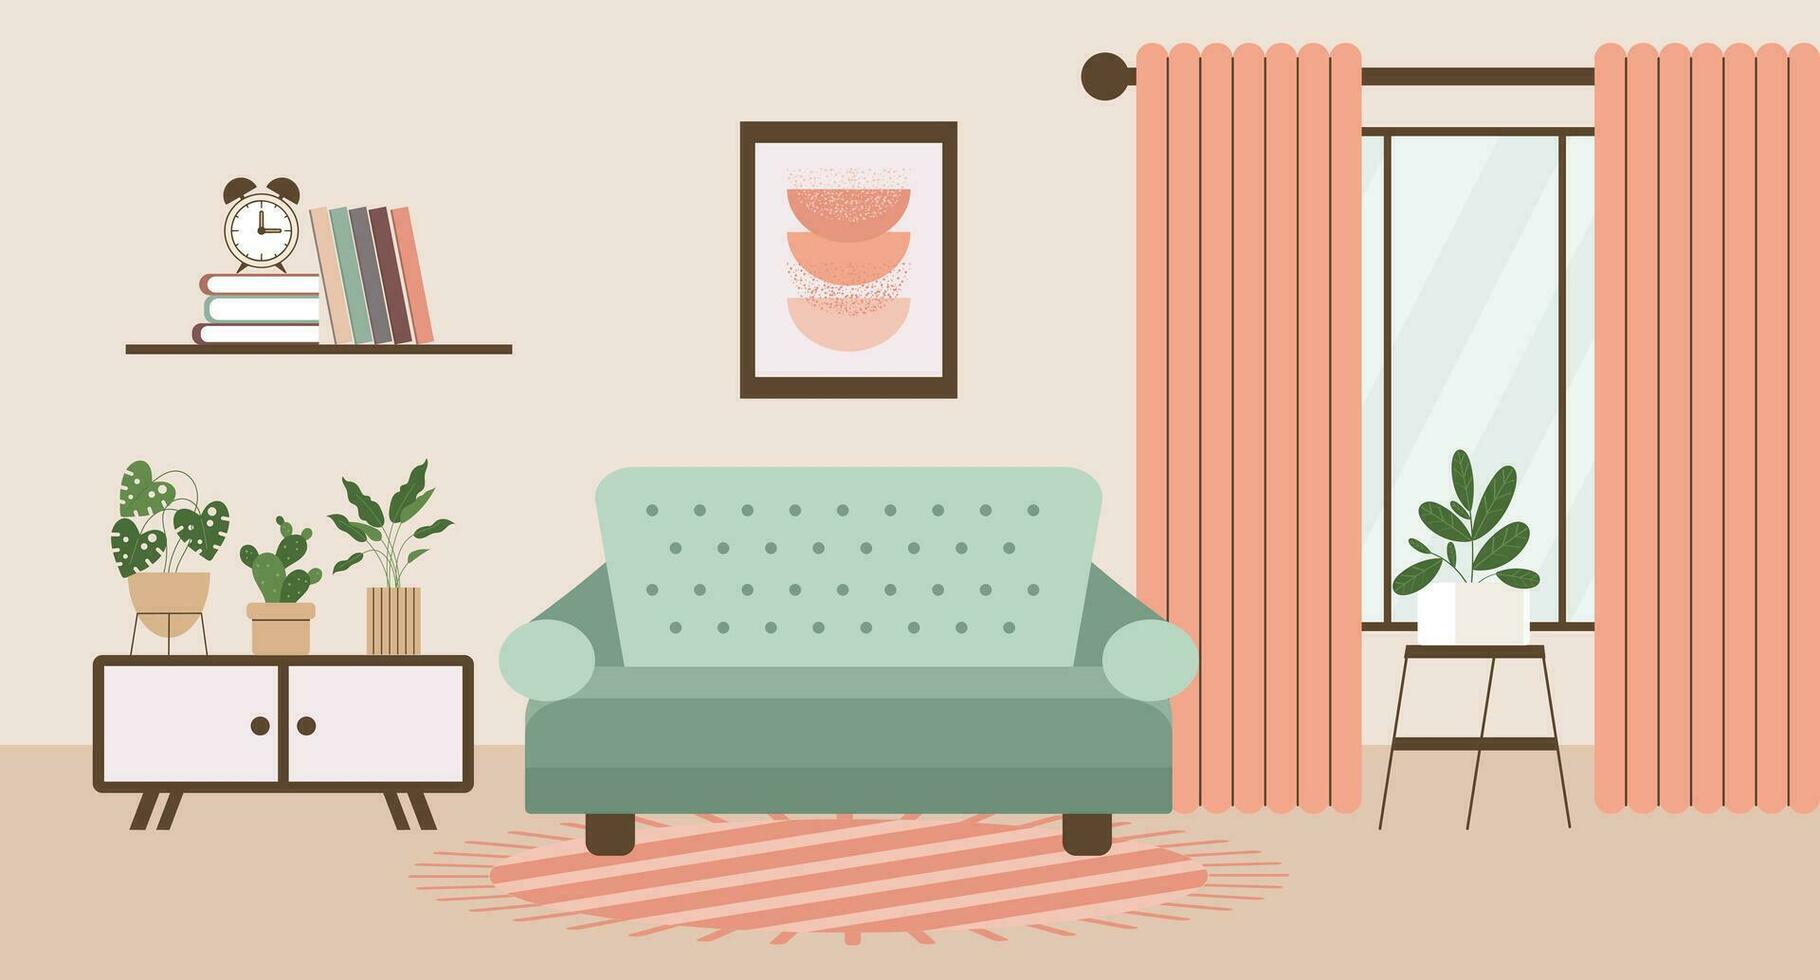 Leben Zimmer mit Sofa, Haus Pflanzen, Bett Tisch, Fenster mit Vorhänge, Bücherregal und Gemälde auf das Mauer. eben Innere im minimal Stil, Vektor